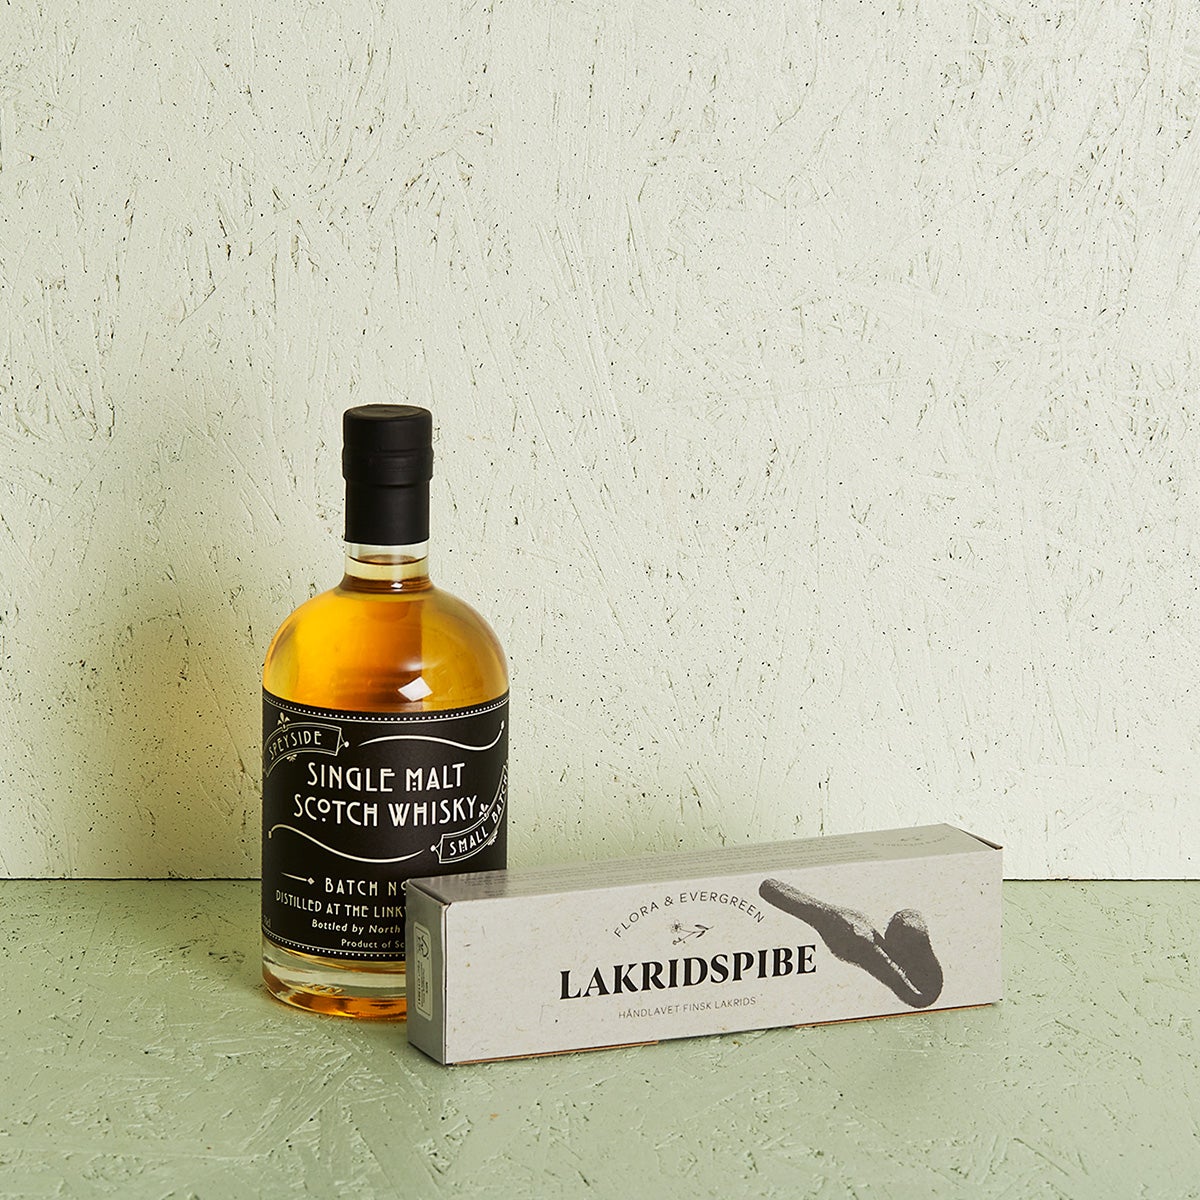 Linkwood whisky med lakridspibe